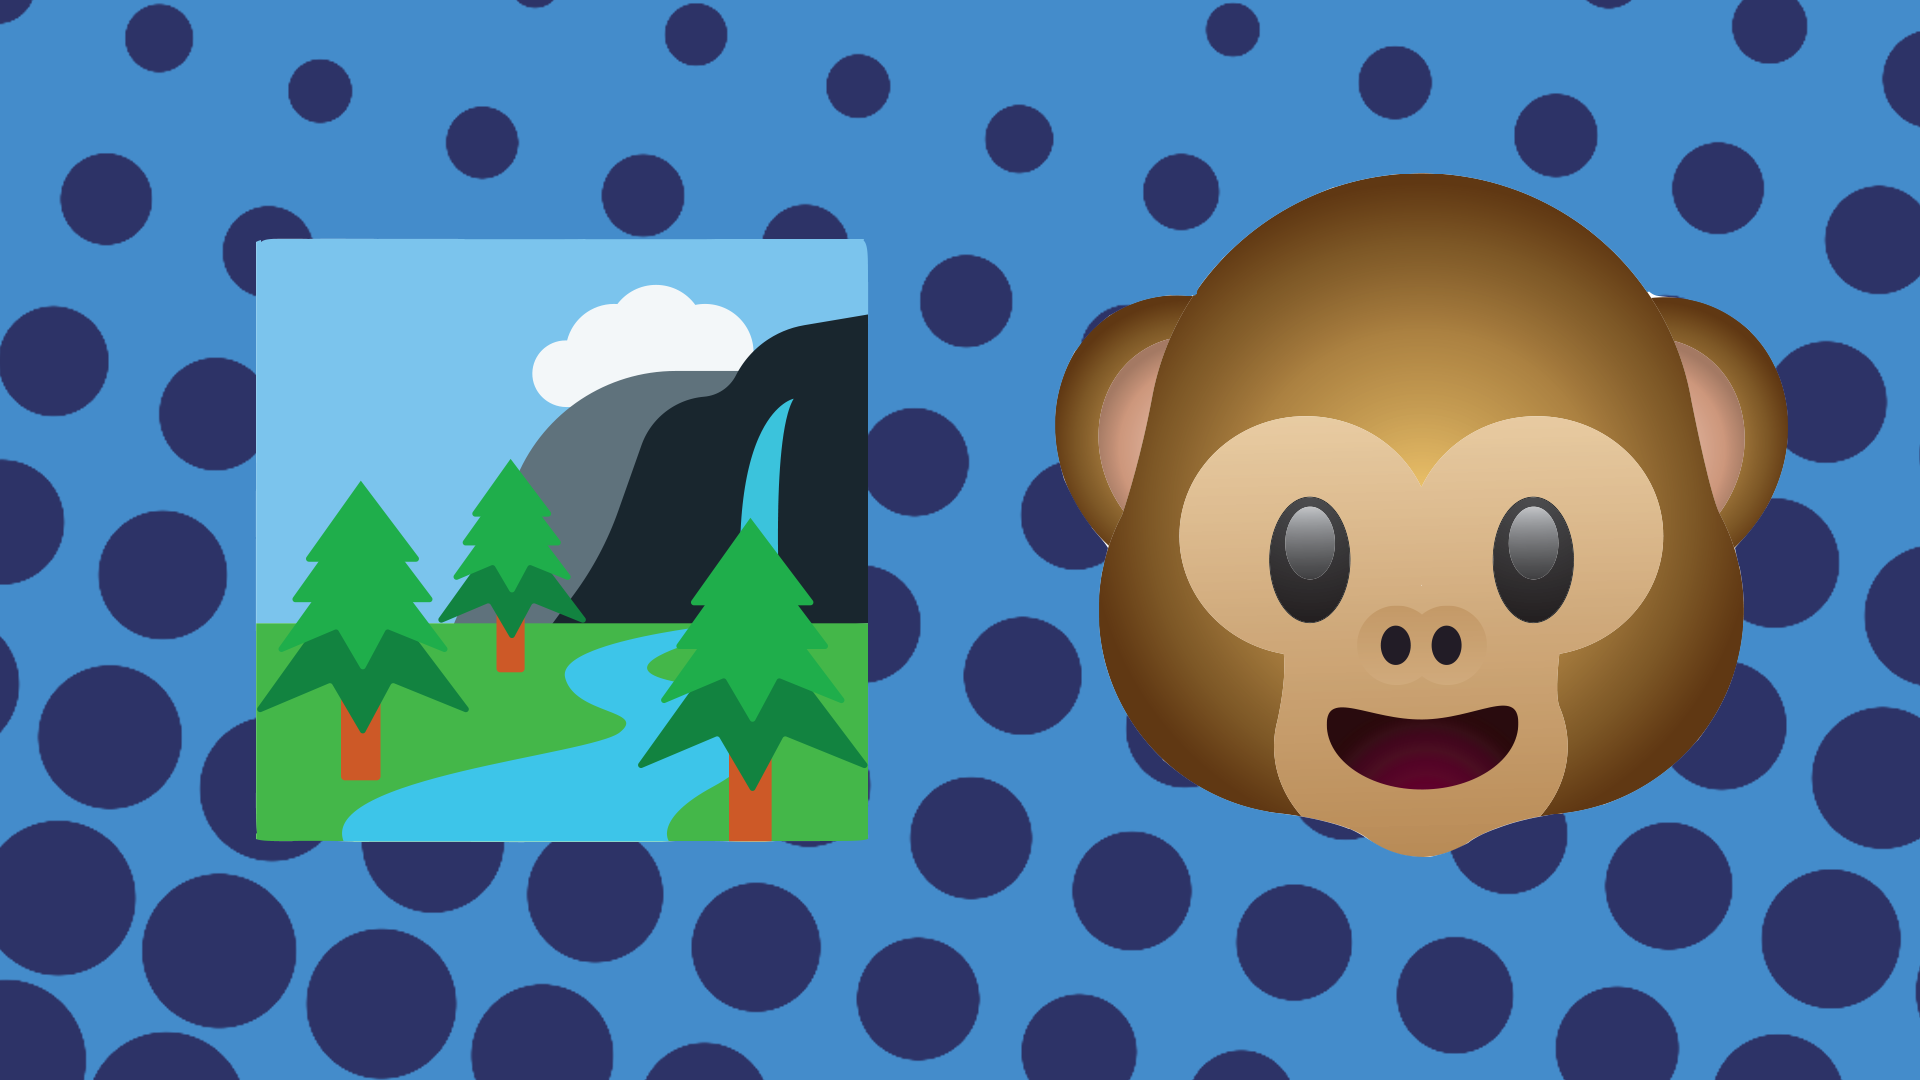 A river and a monkey emoji